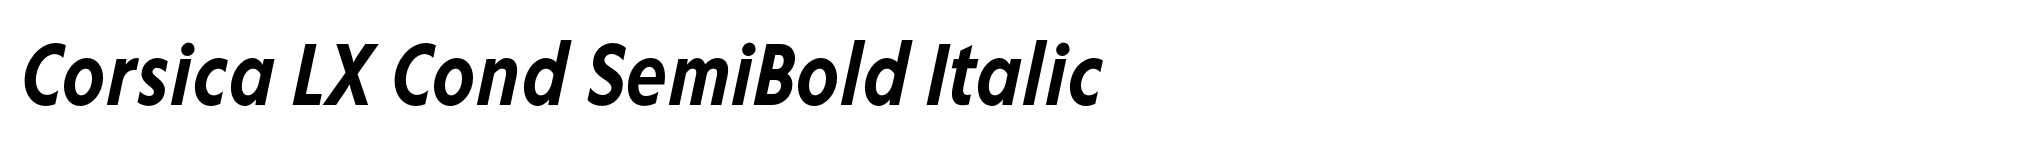 Corsica LX Cond SemiBold Italic image